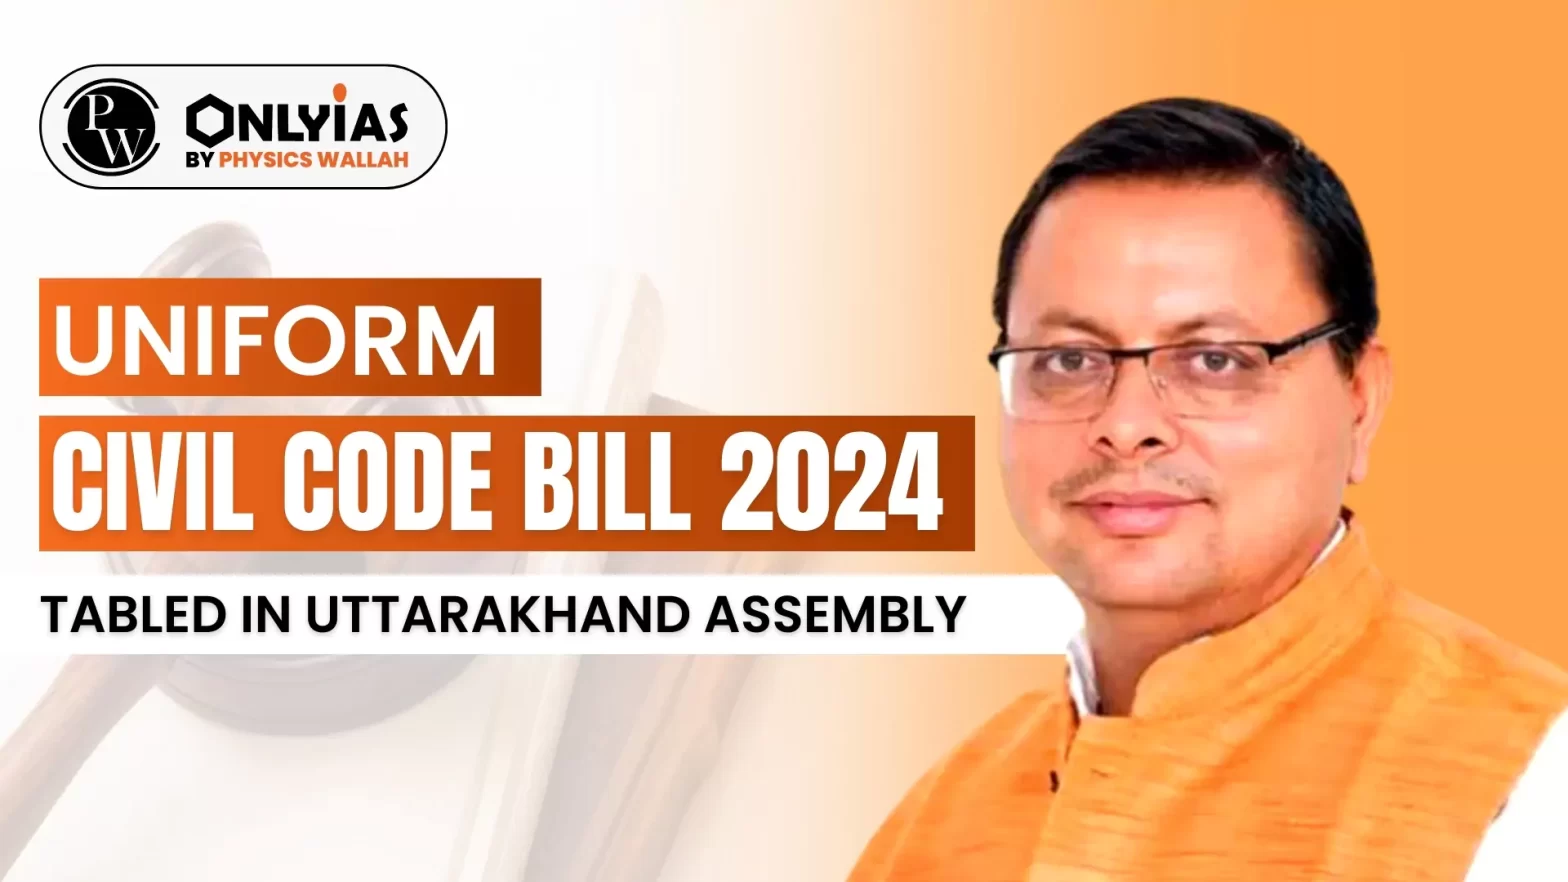 Uniform Civil Code Bill 2024 Tabled in Uttarakhand Assembly